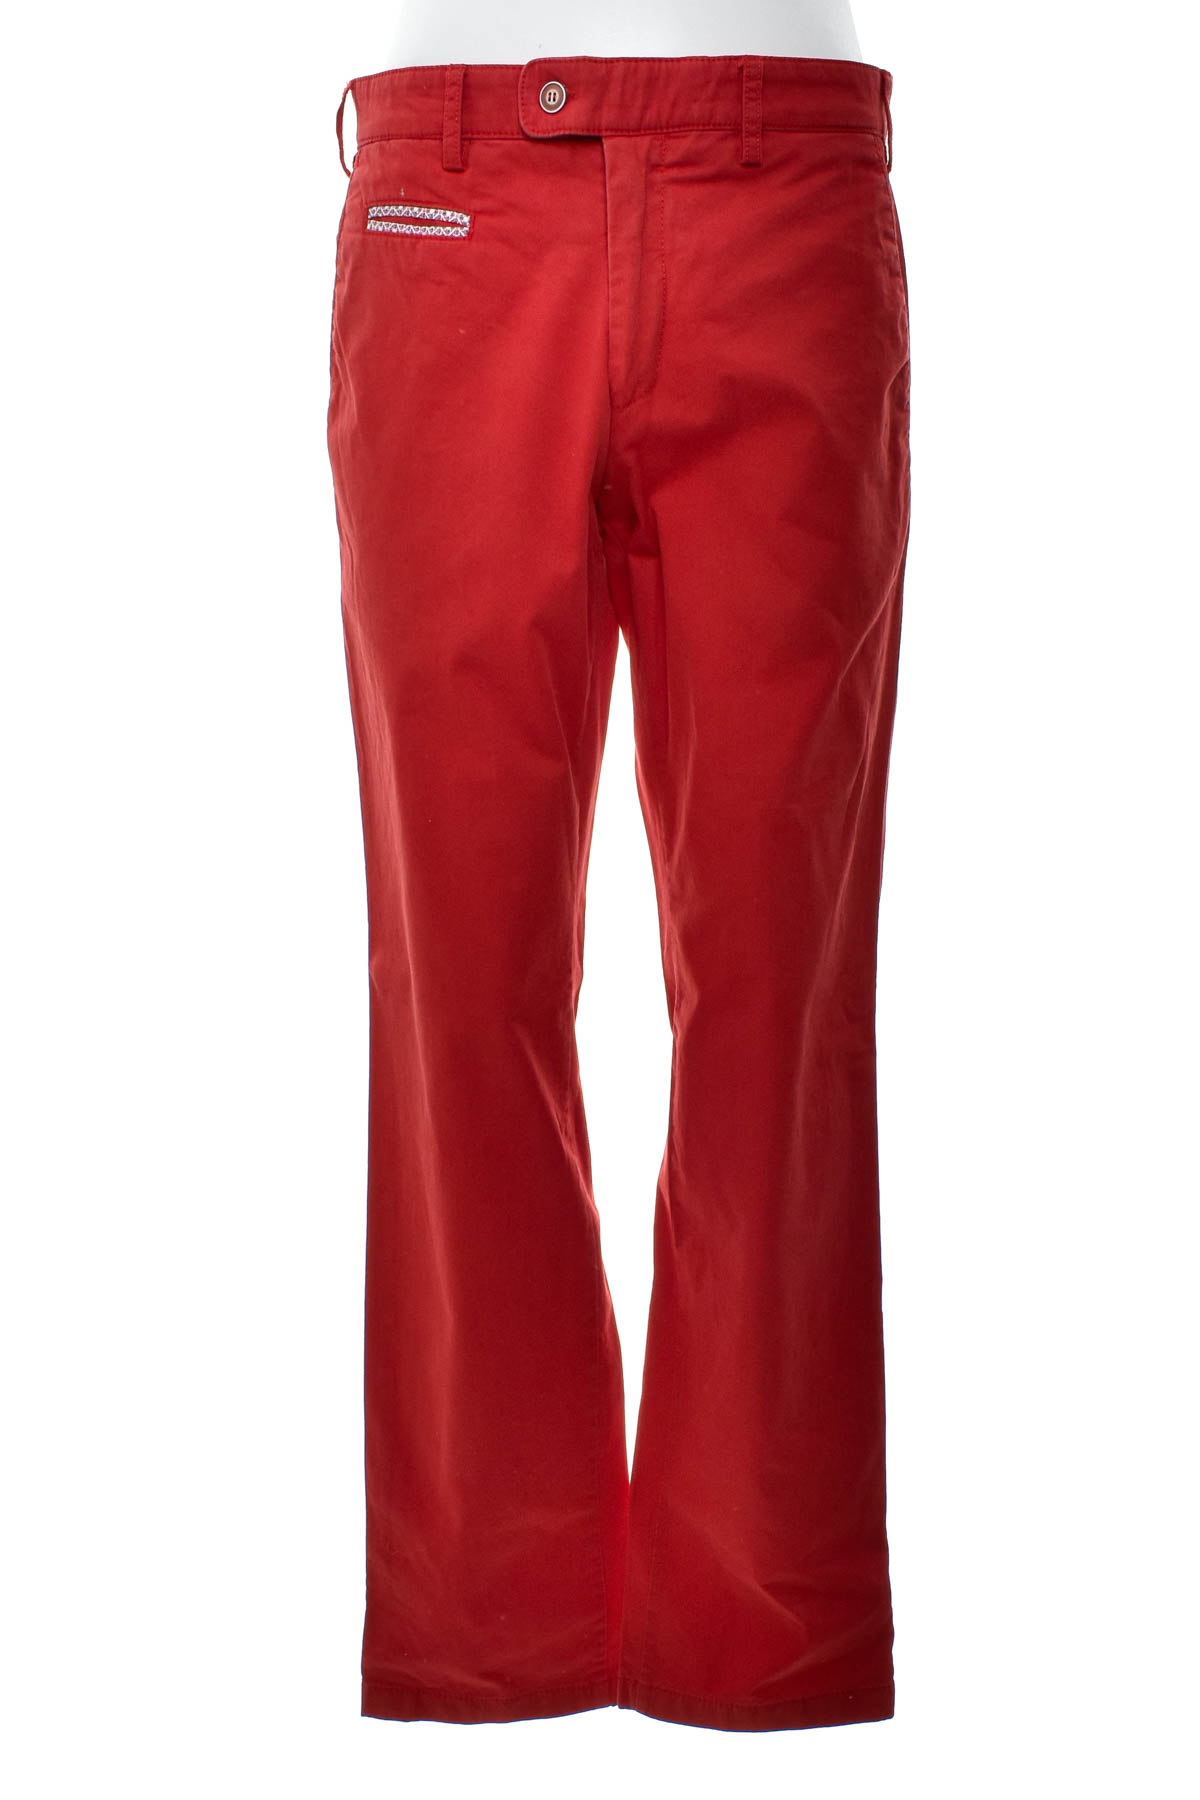 Men's trousers - Digel - 0